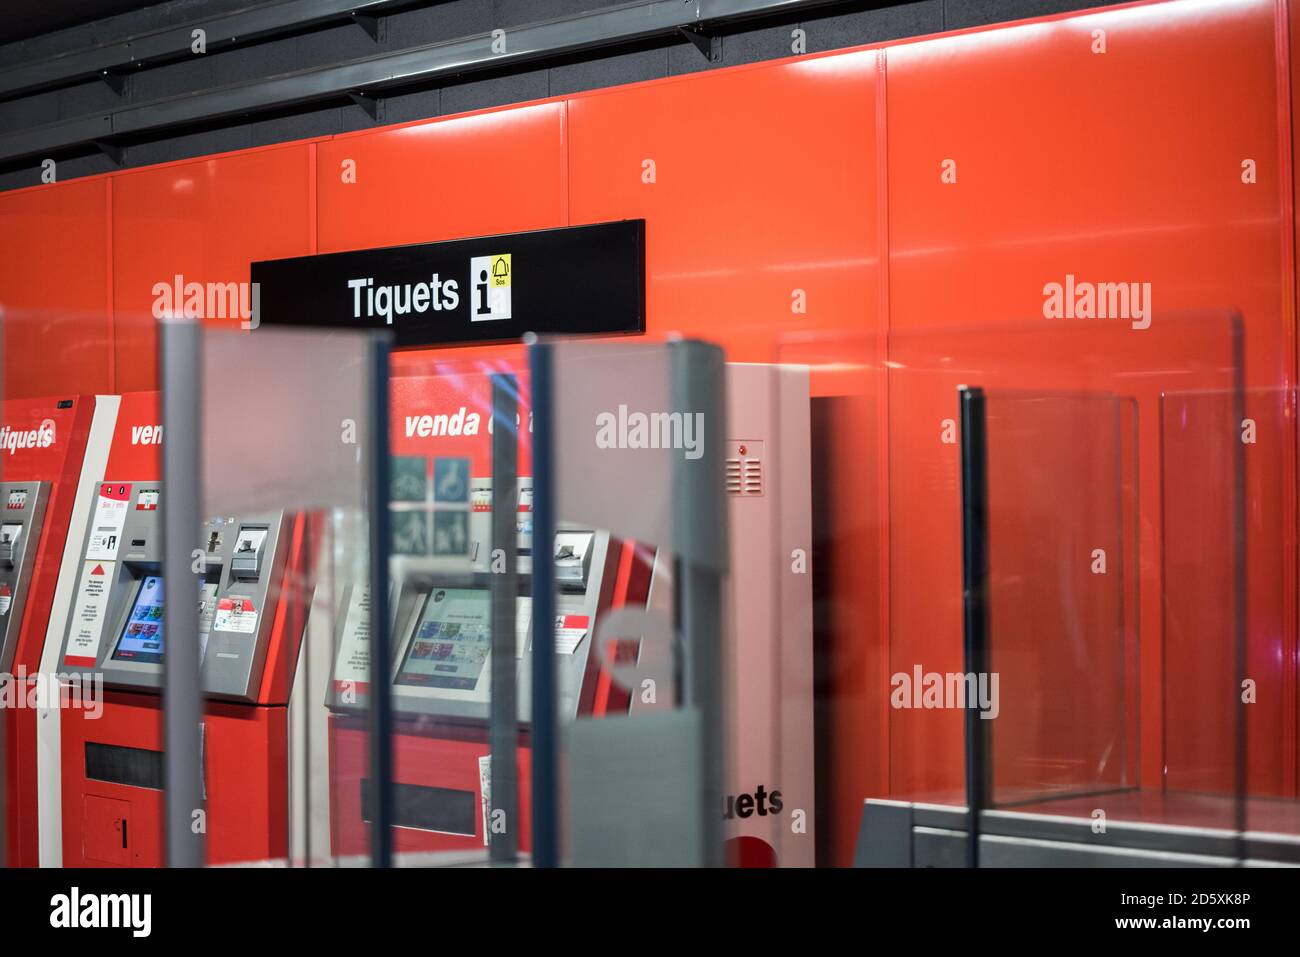 Barcelone, Espagne - 23 décembre 2019 - machine automatique de vente de billets à une station de métro de Barcelone. Mur rouge sur l'arrière-plan. Banque D'Images